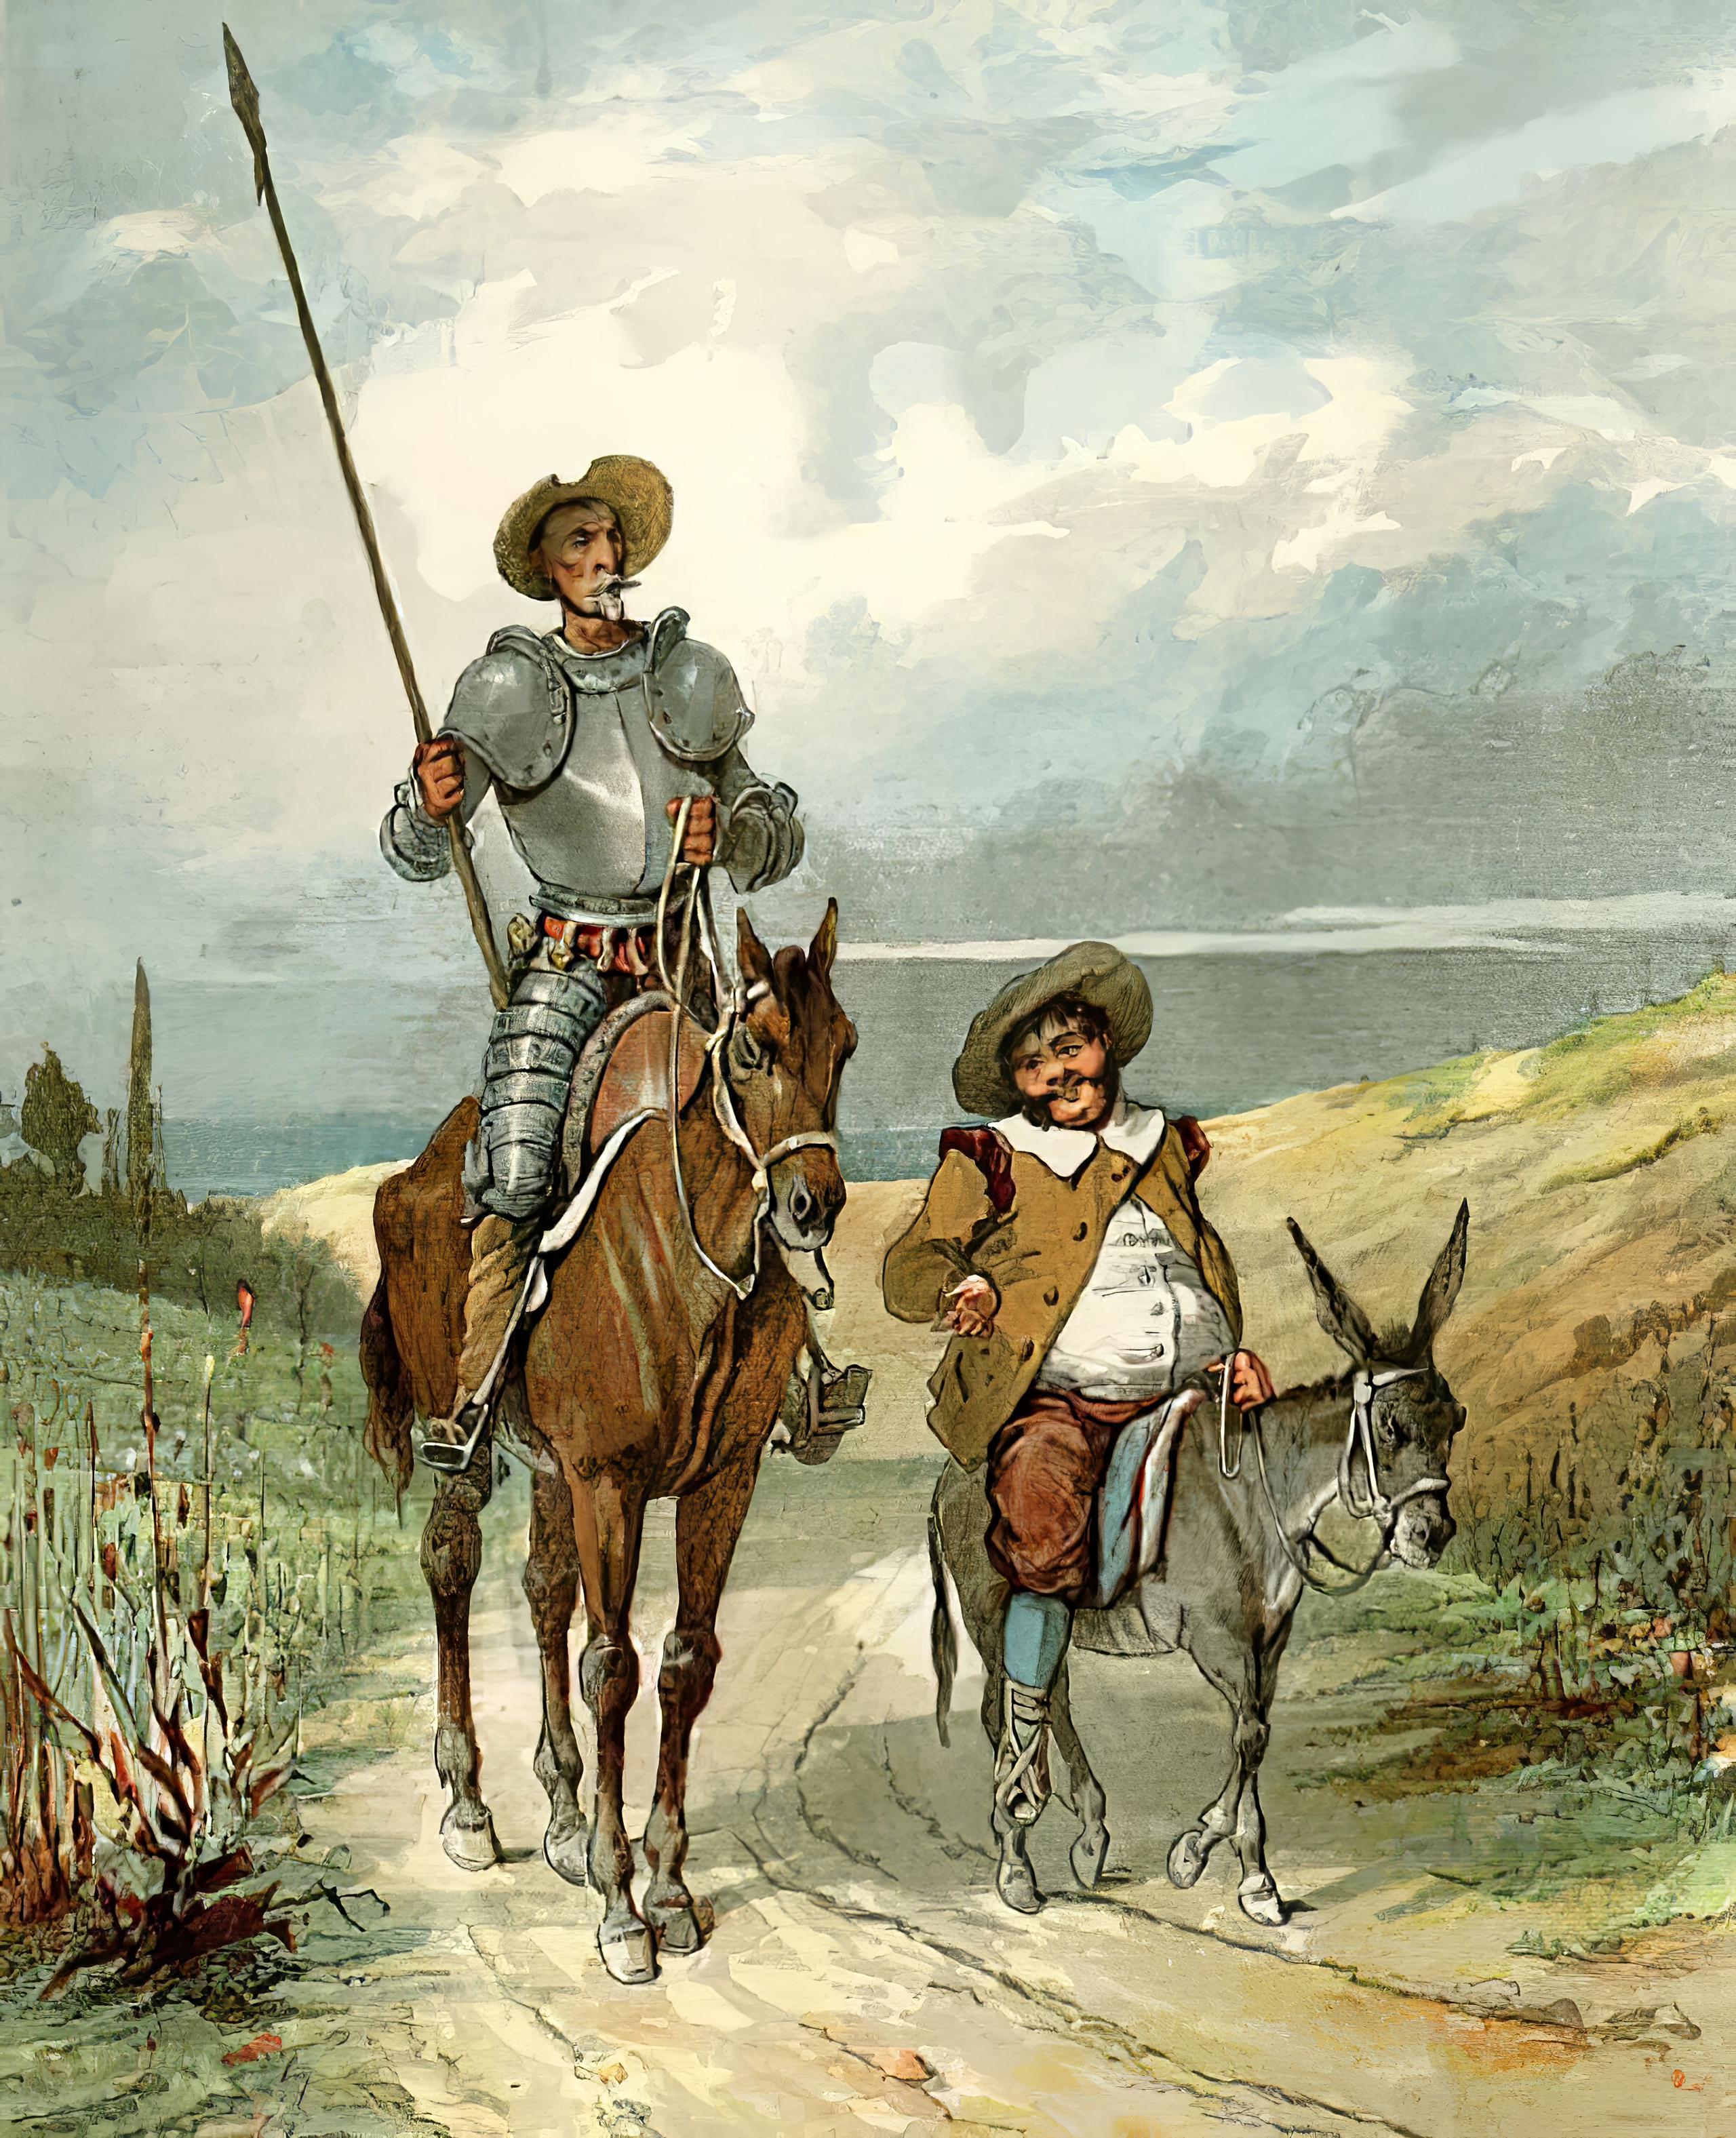 Book Don Quixote of La Mancha in Russian